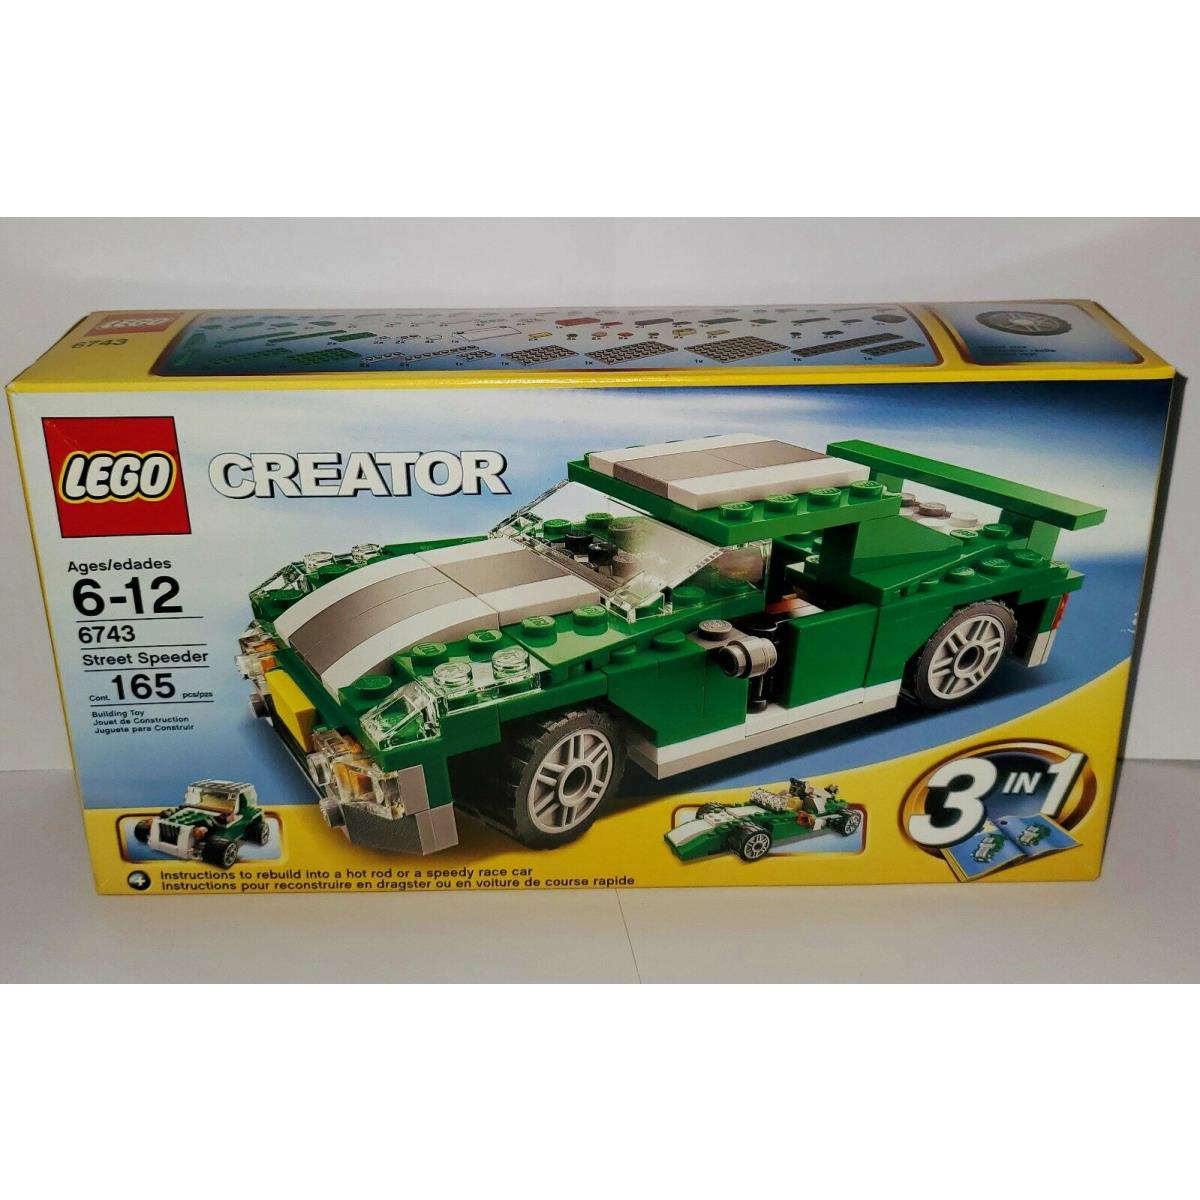 Lego Creator 3 in 1 Racecar Set 6743 Street Speeder Indy Car Dune Buggy Htf